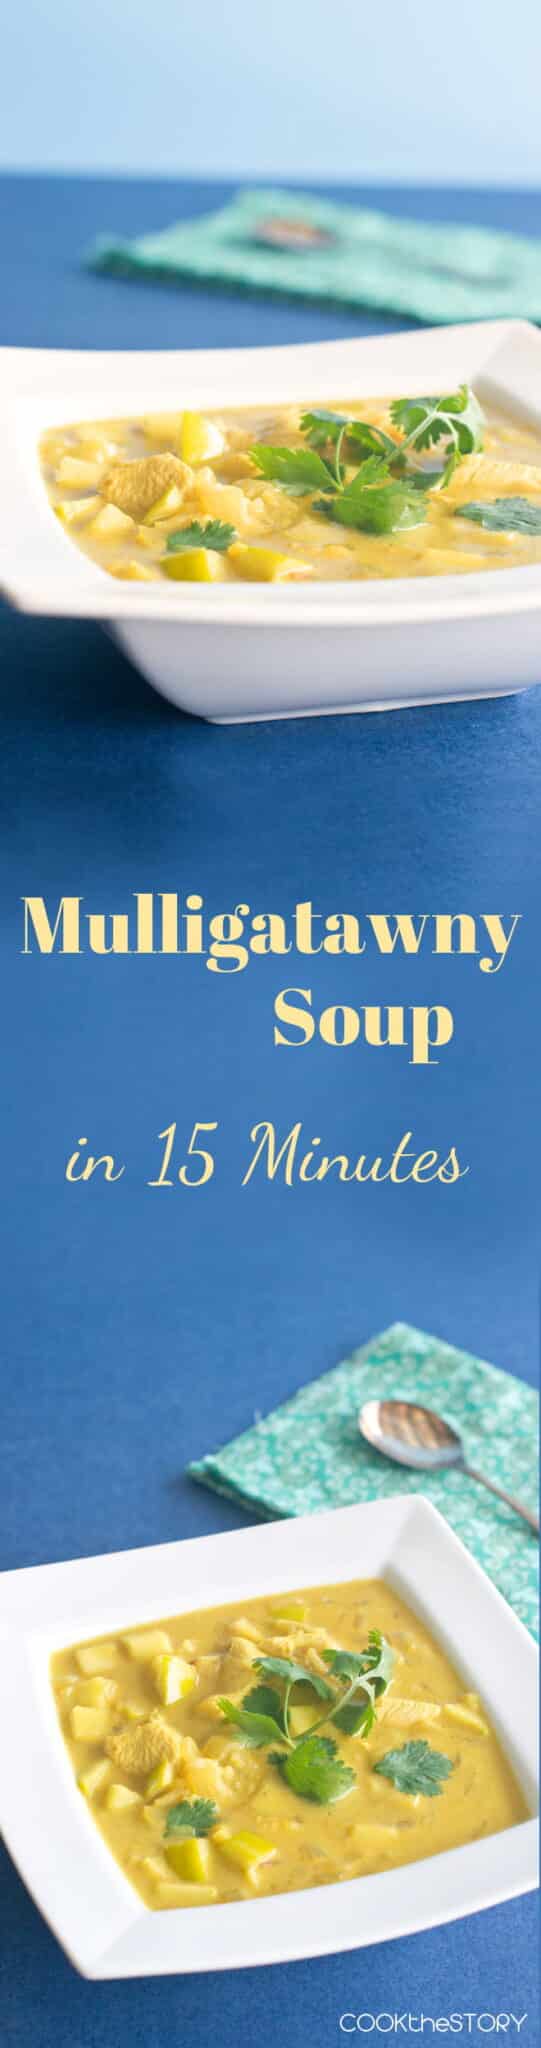 15-Minute Mulligatawny Soup